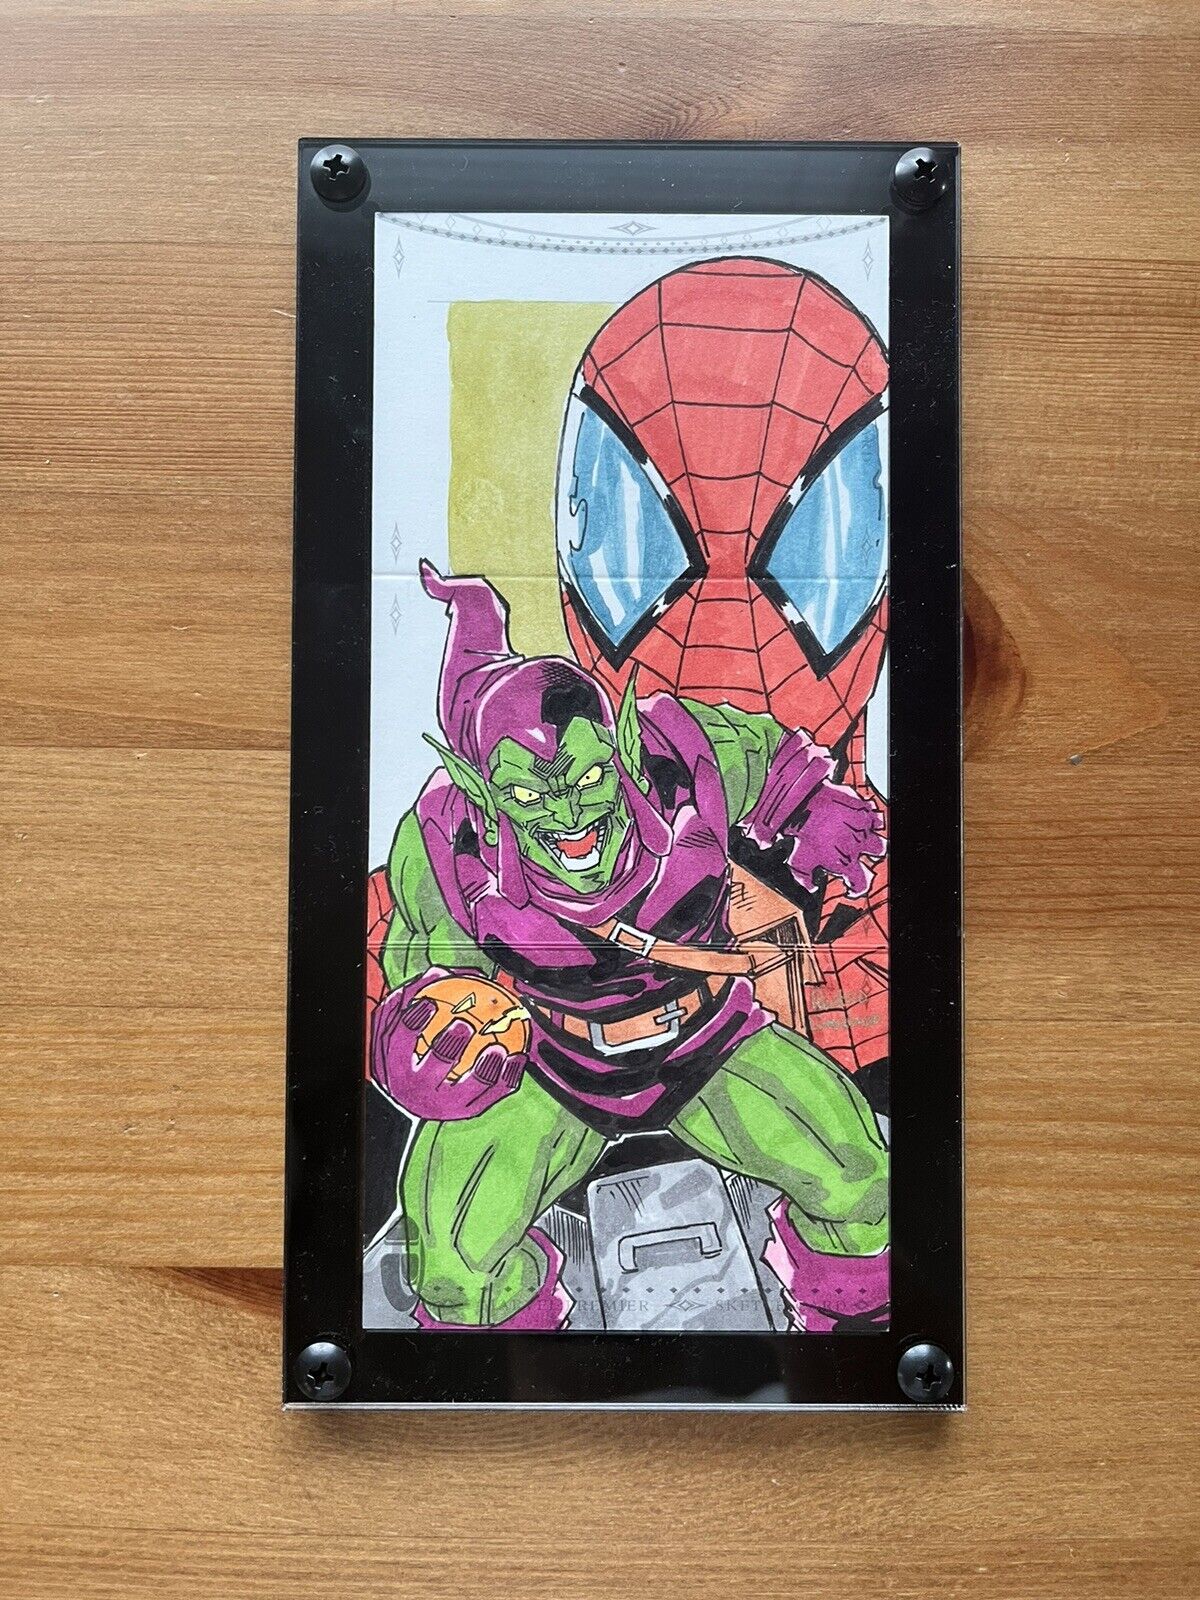 2014 Marvel Premier Triple Panel Spider-Man Sketch Card By Rustico Limosinero